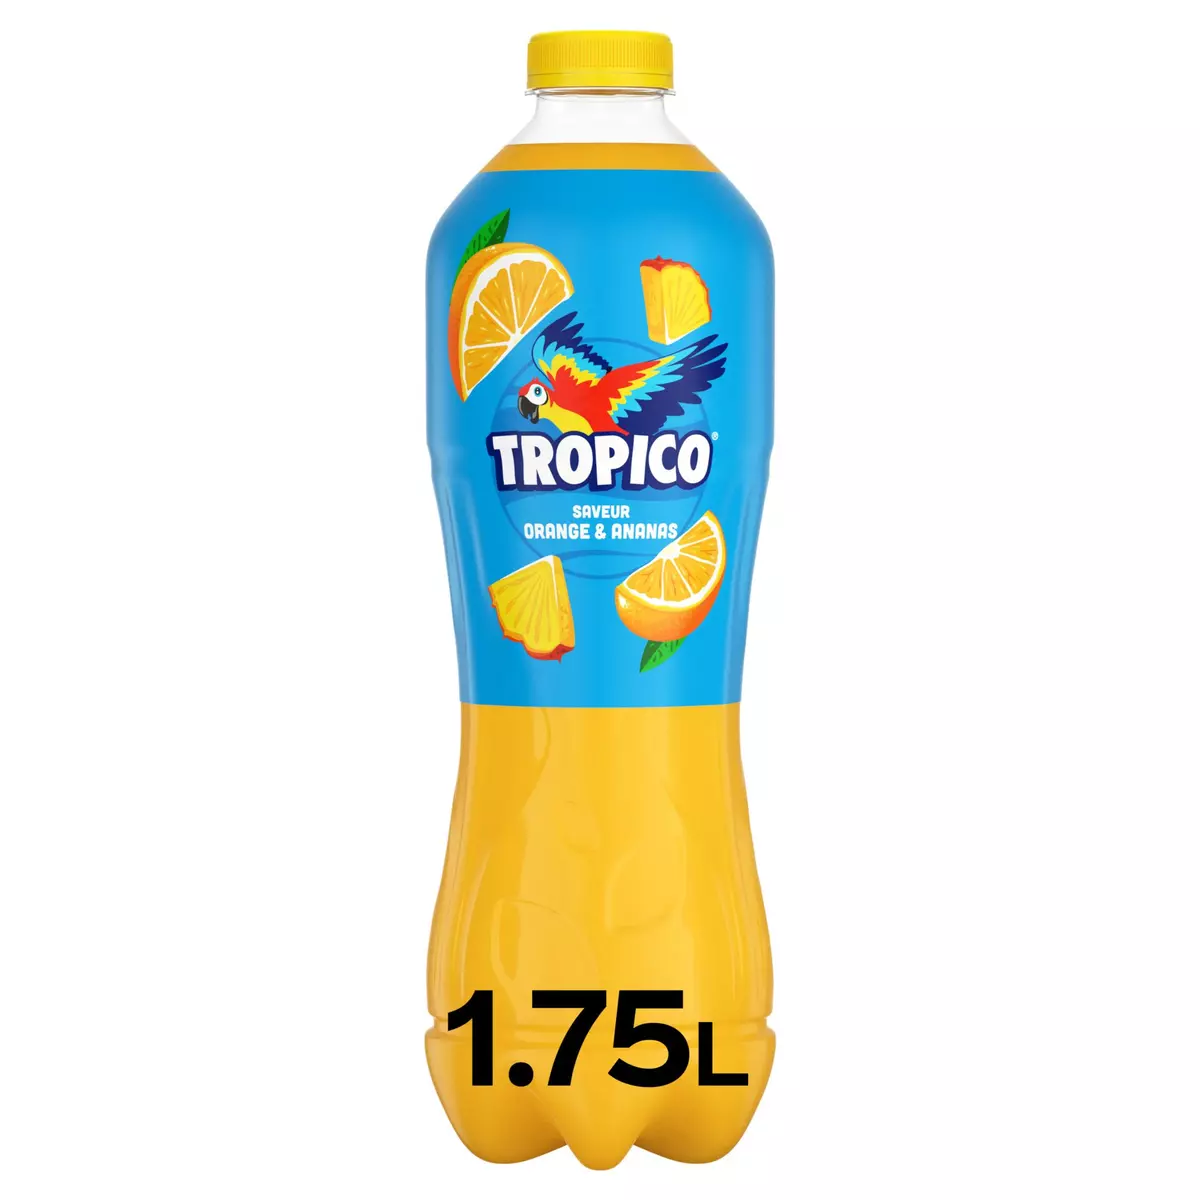 TROPICO Boisson aux fruits saveur orange et ananas 1.75l